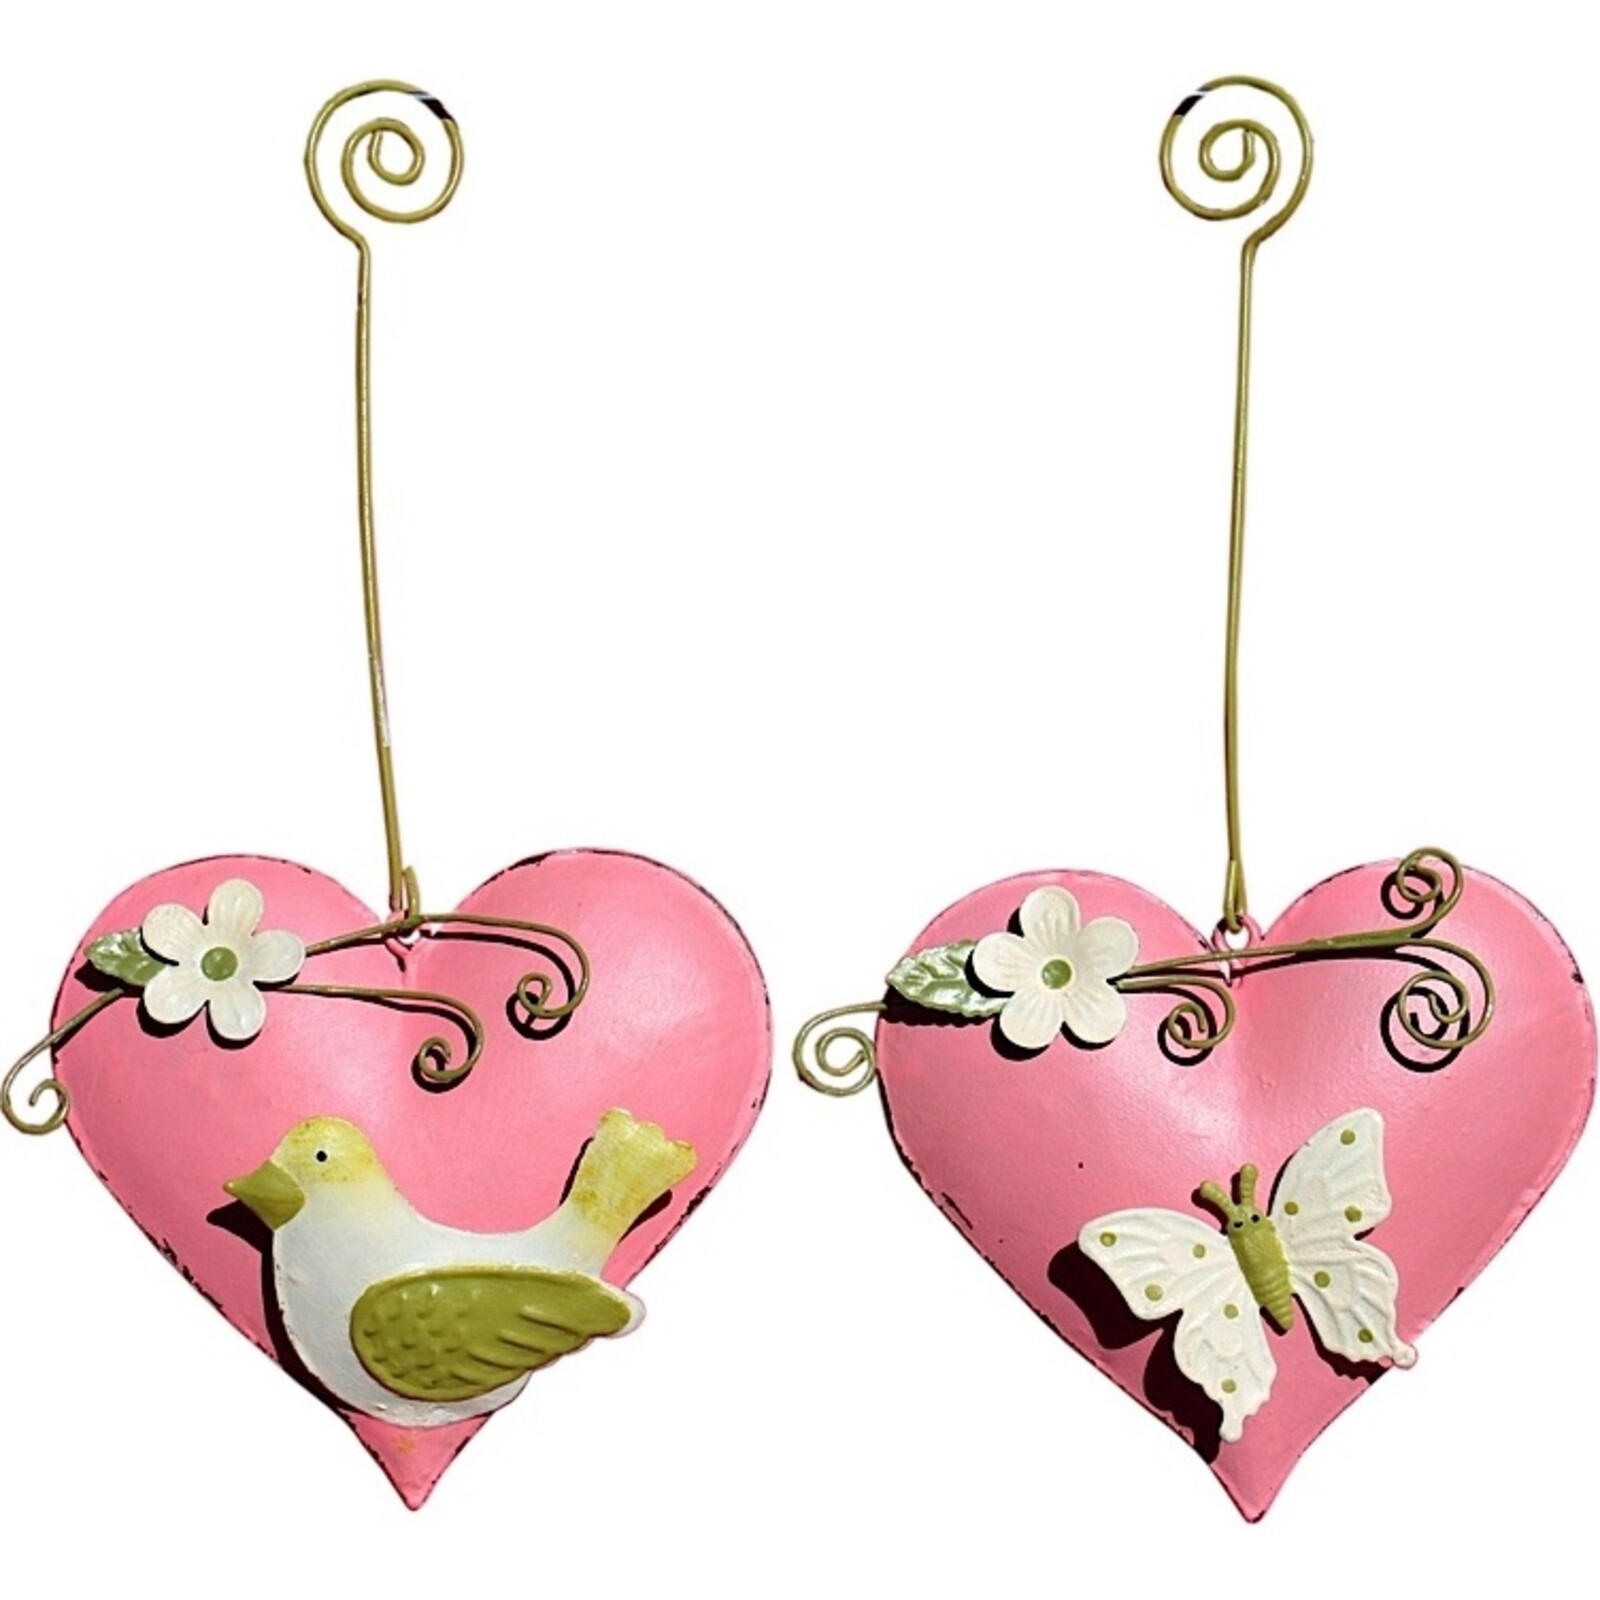 Hanging Heart - Pink Pair